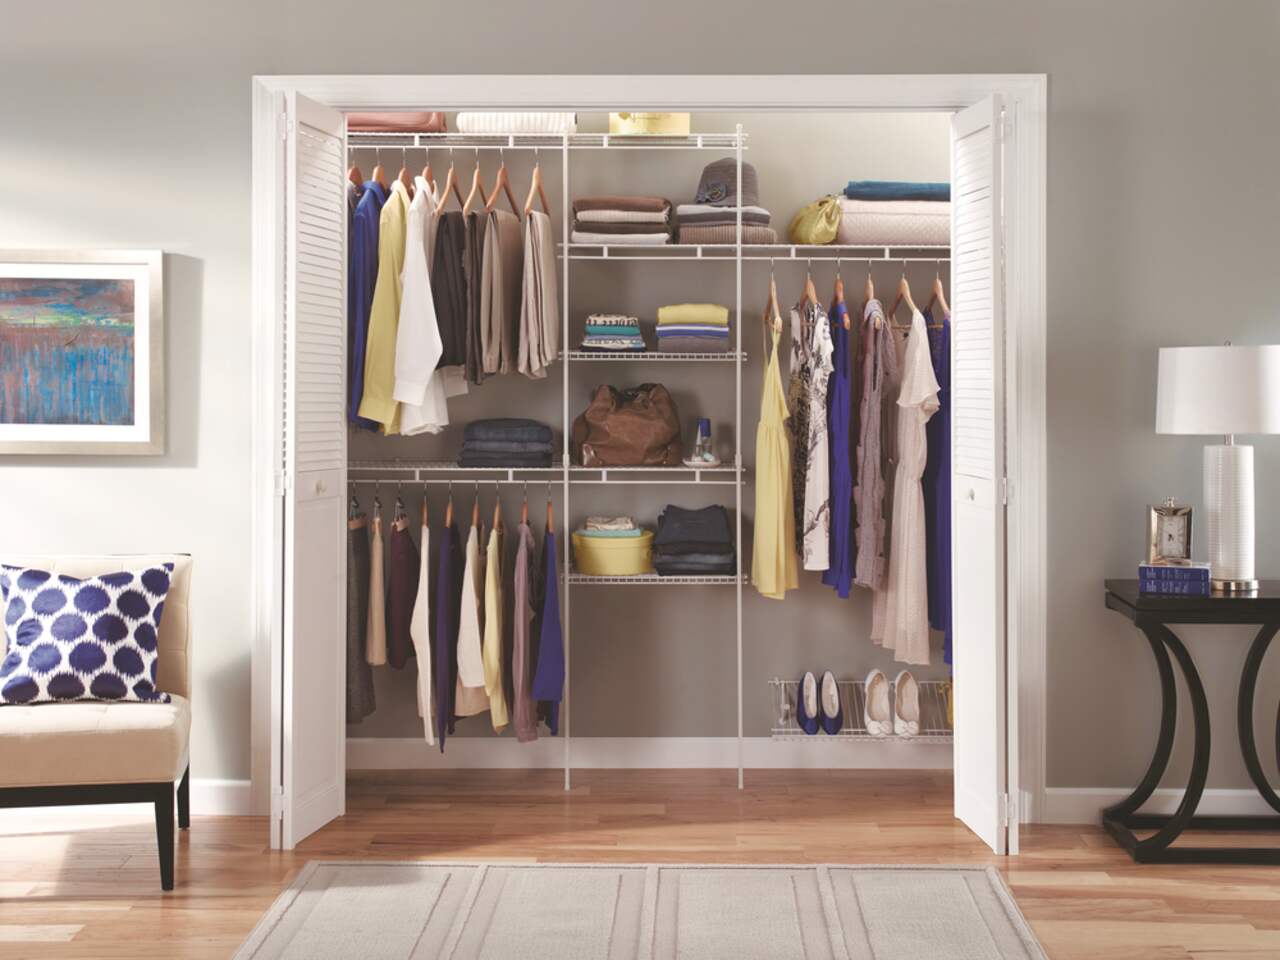 Matching Sets – A'Dorn Comfy Closet